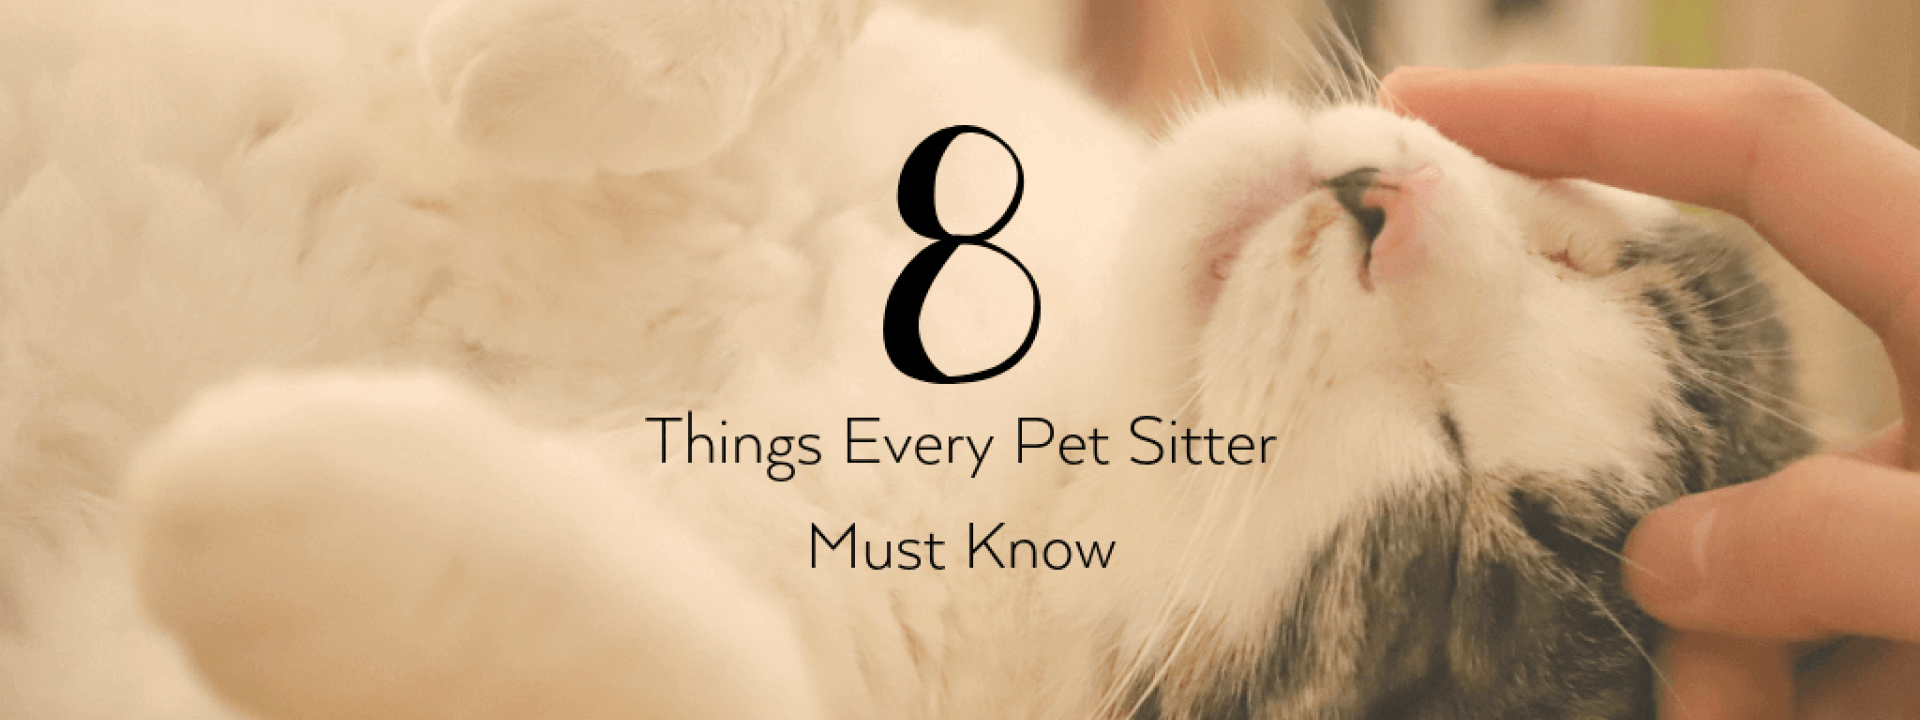 Pet-sitter-blog-header.png